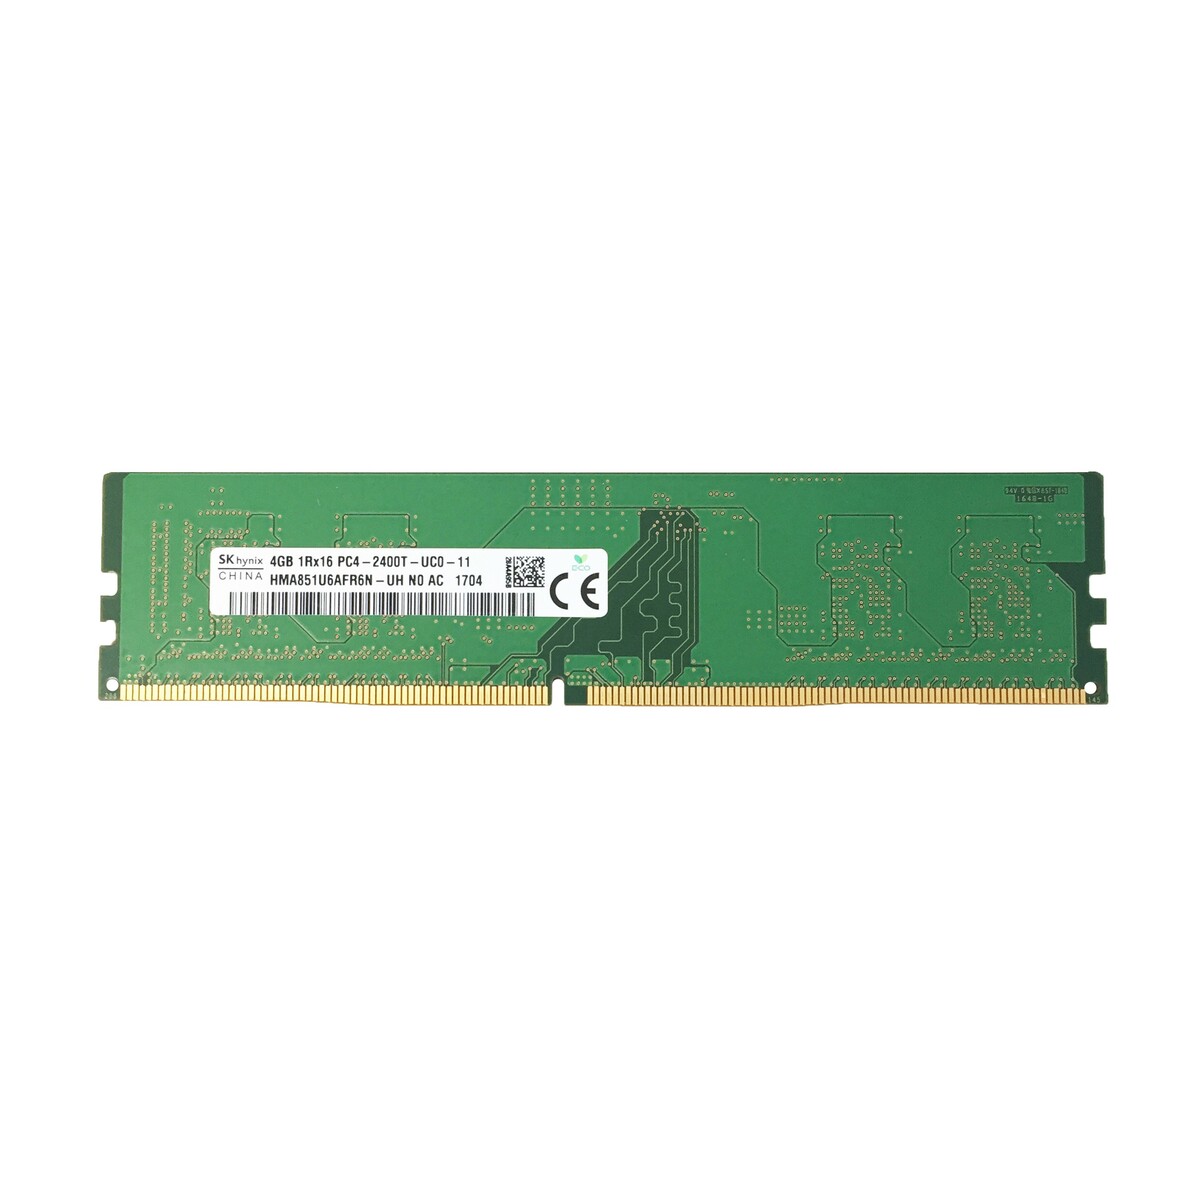 SKhynix 4GB 1Rx16 PC4-2400Tメモリ